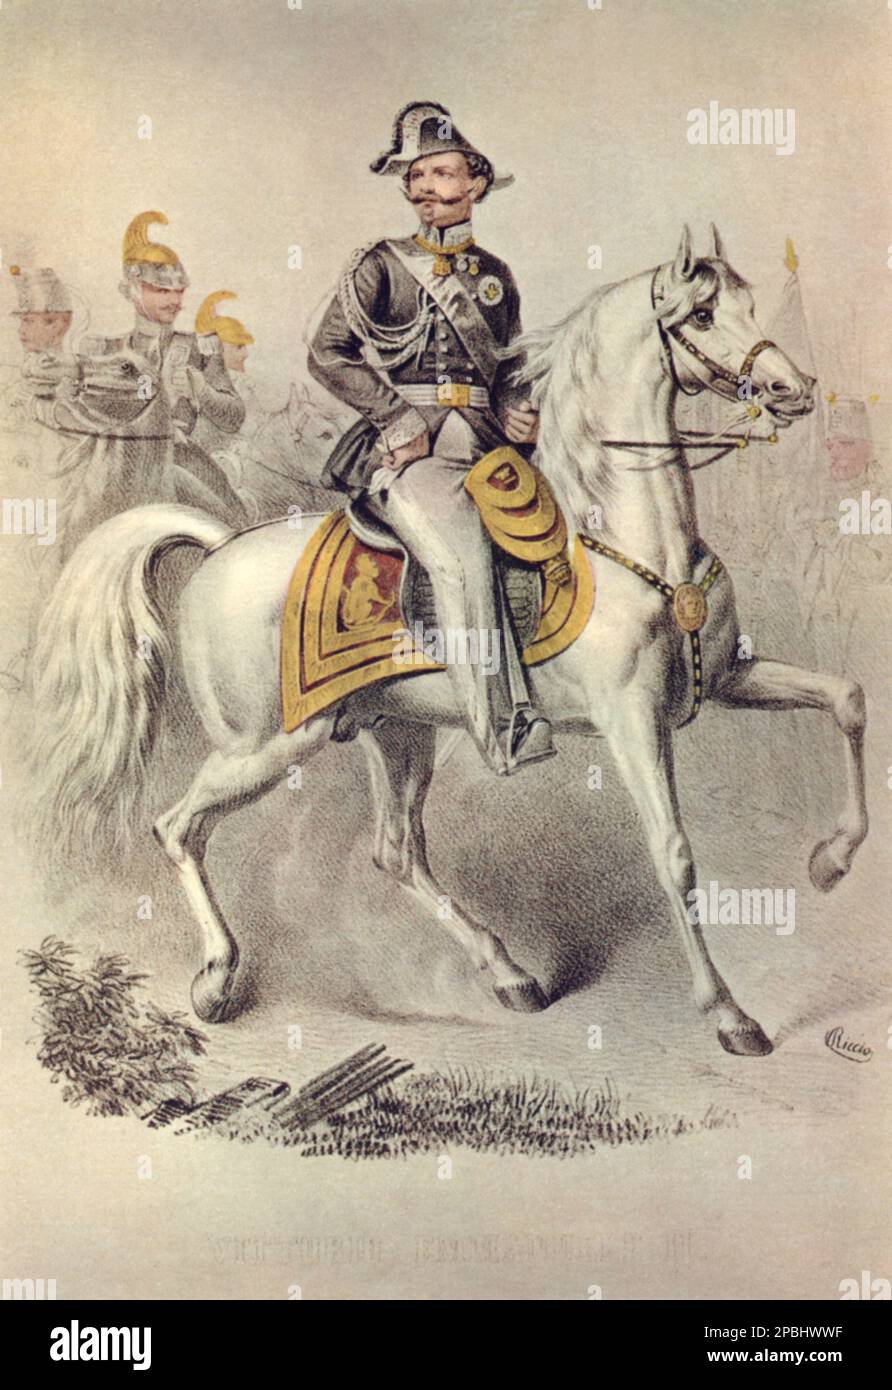 1860 ca,  Italy : The italian King VITTORIO EMANUELE II di SAVOIA  ( 1820 - 1888 ) during the war of 1859, popular print by Riccio - Italy  - ITALIA  - CASA SAVOIA - REALI -  Nobiltà  ITALIANA - SAVOY - NOBILITY - ROYALTY - HISTORY - FOTO STORICHE - royalty - nobili -  Nobiltà    - portrait - ritratto  - baffi - moustache - military uniform - divisa uniforme militare - ITALIA  - incisione - engraving - horse - cavallo - equitazione ----  Archivio GBB Stock Photo